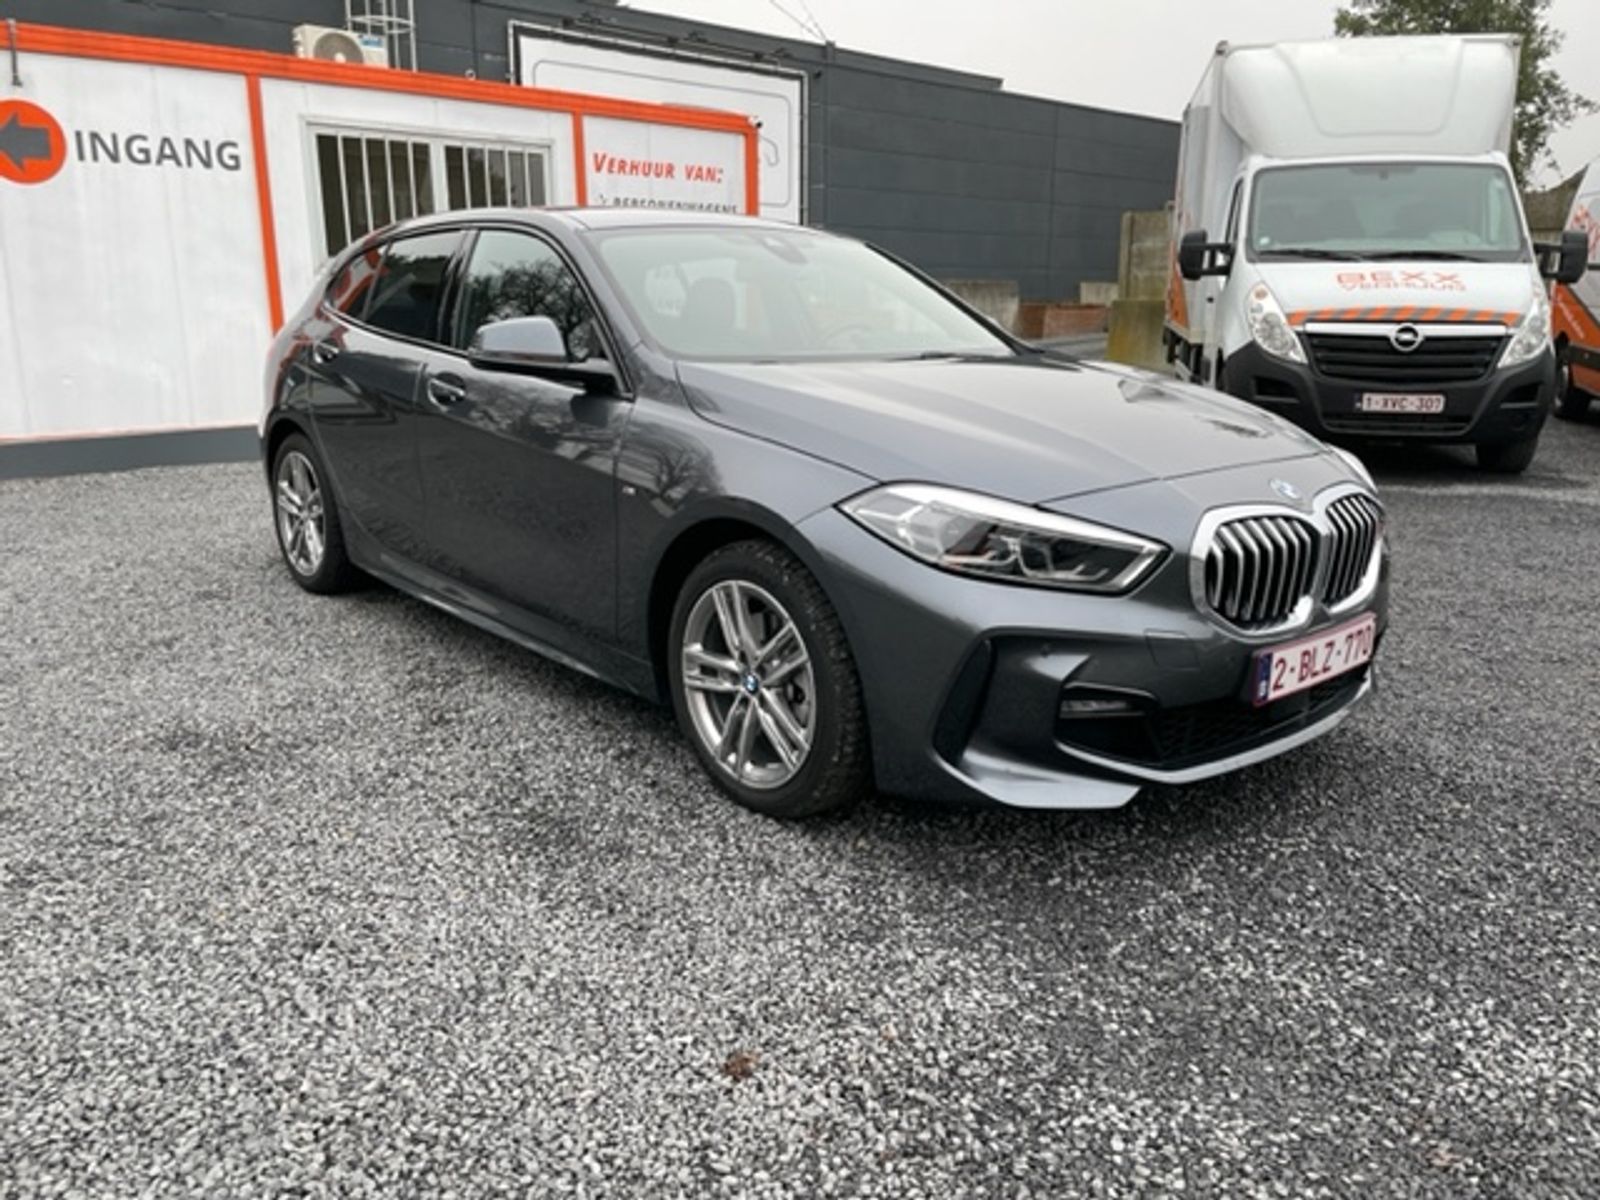 BMW 118i (nieuw model).jpeg